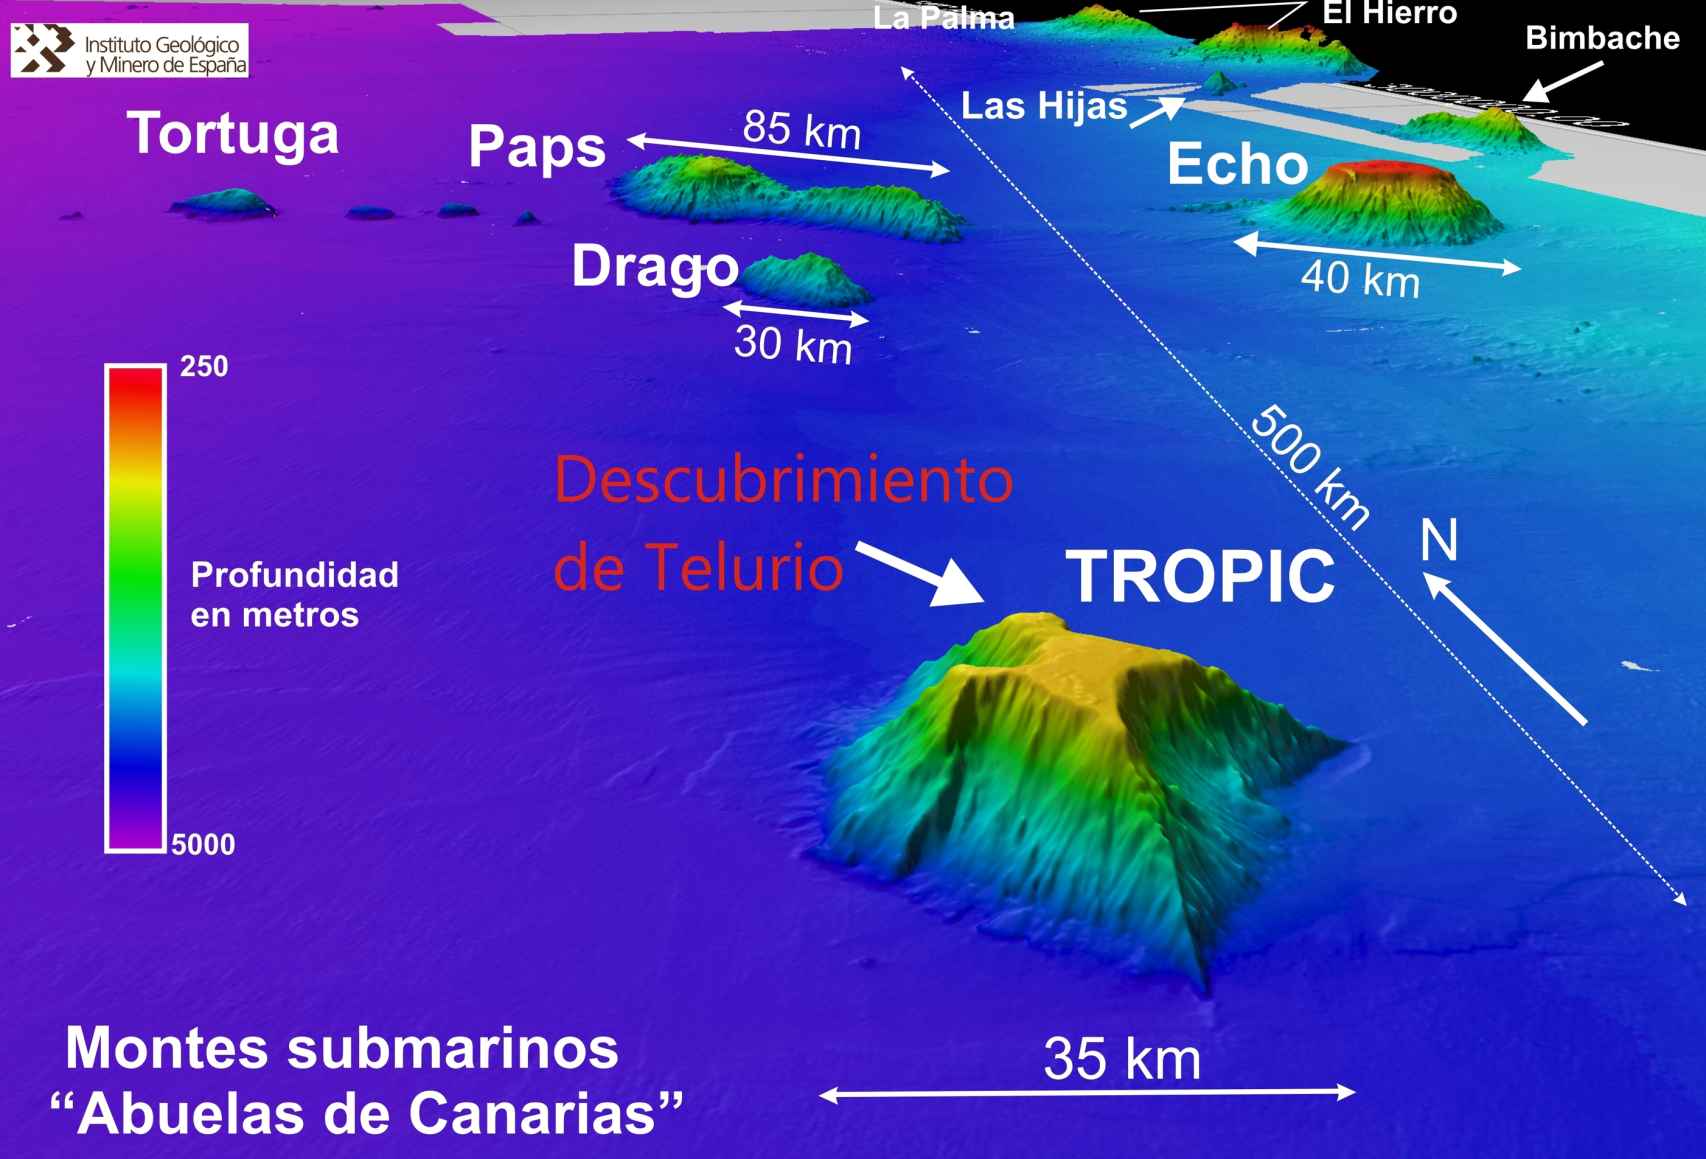 Mapa de los montes submarinos en el entorno de Canarias.